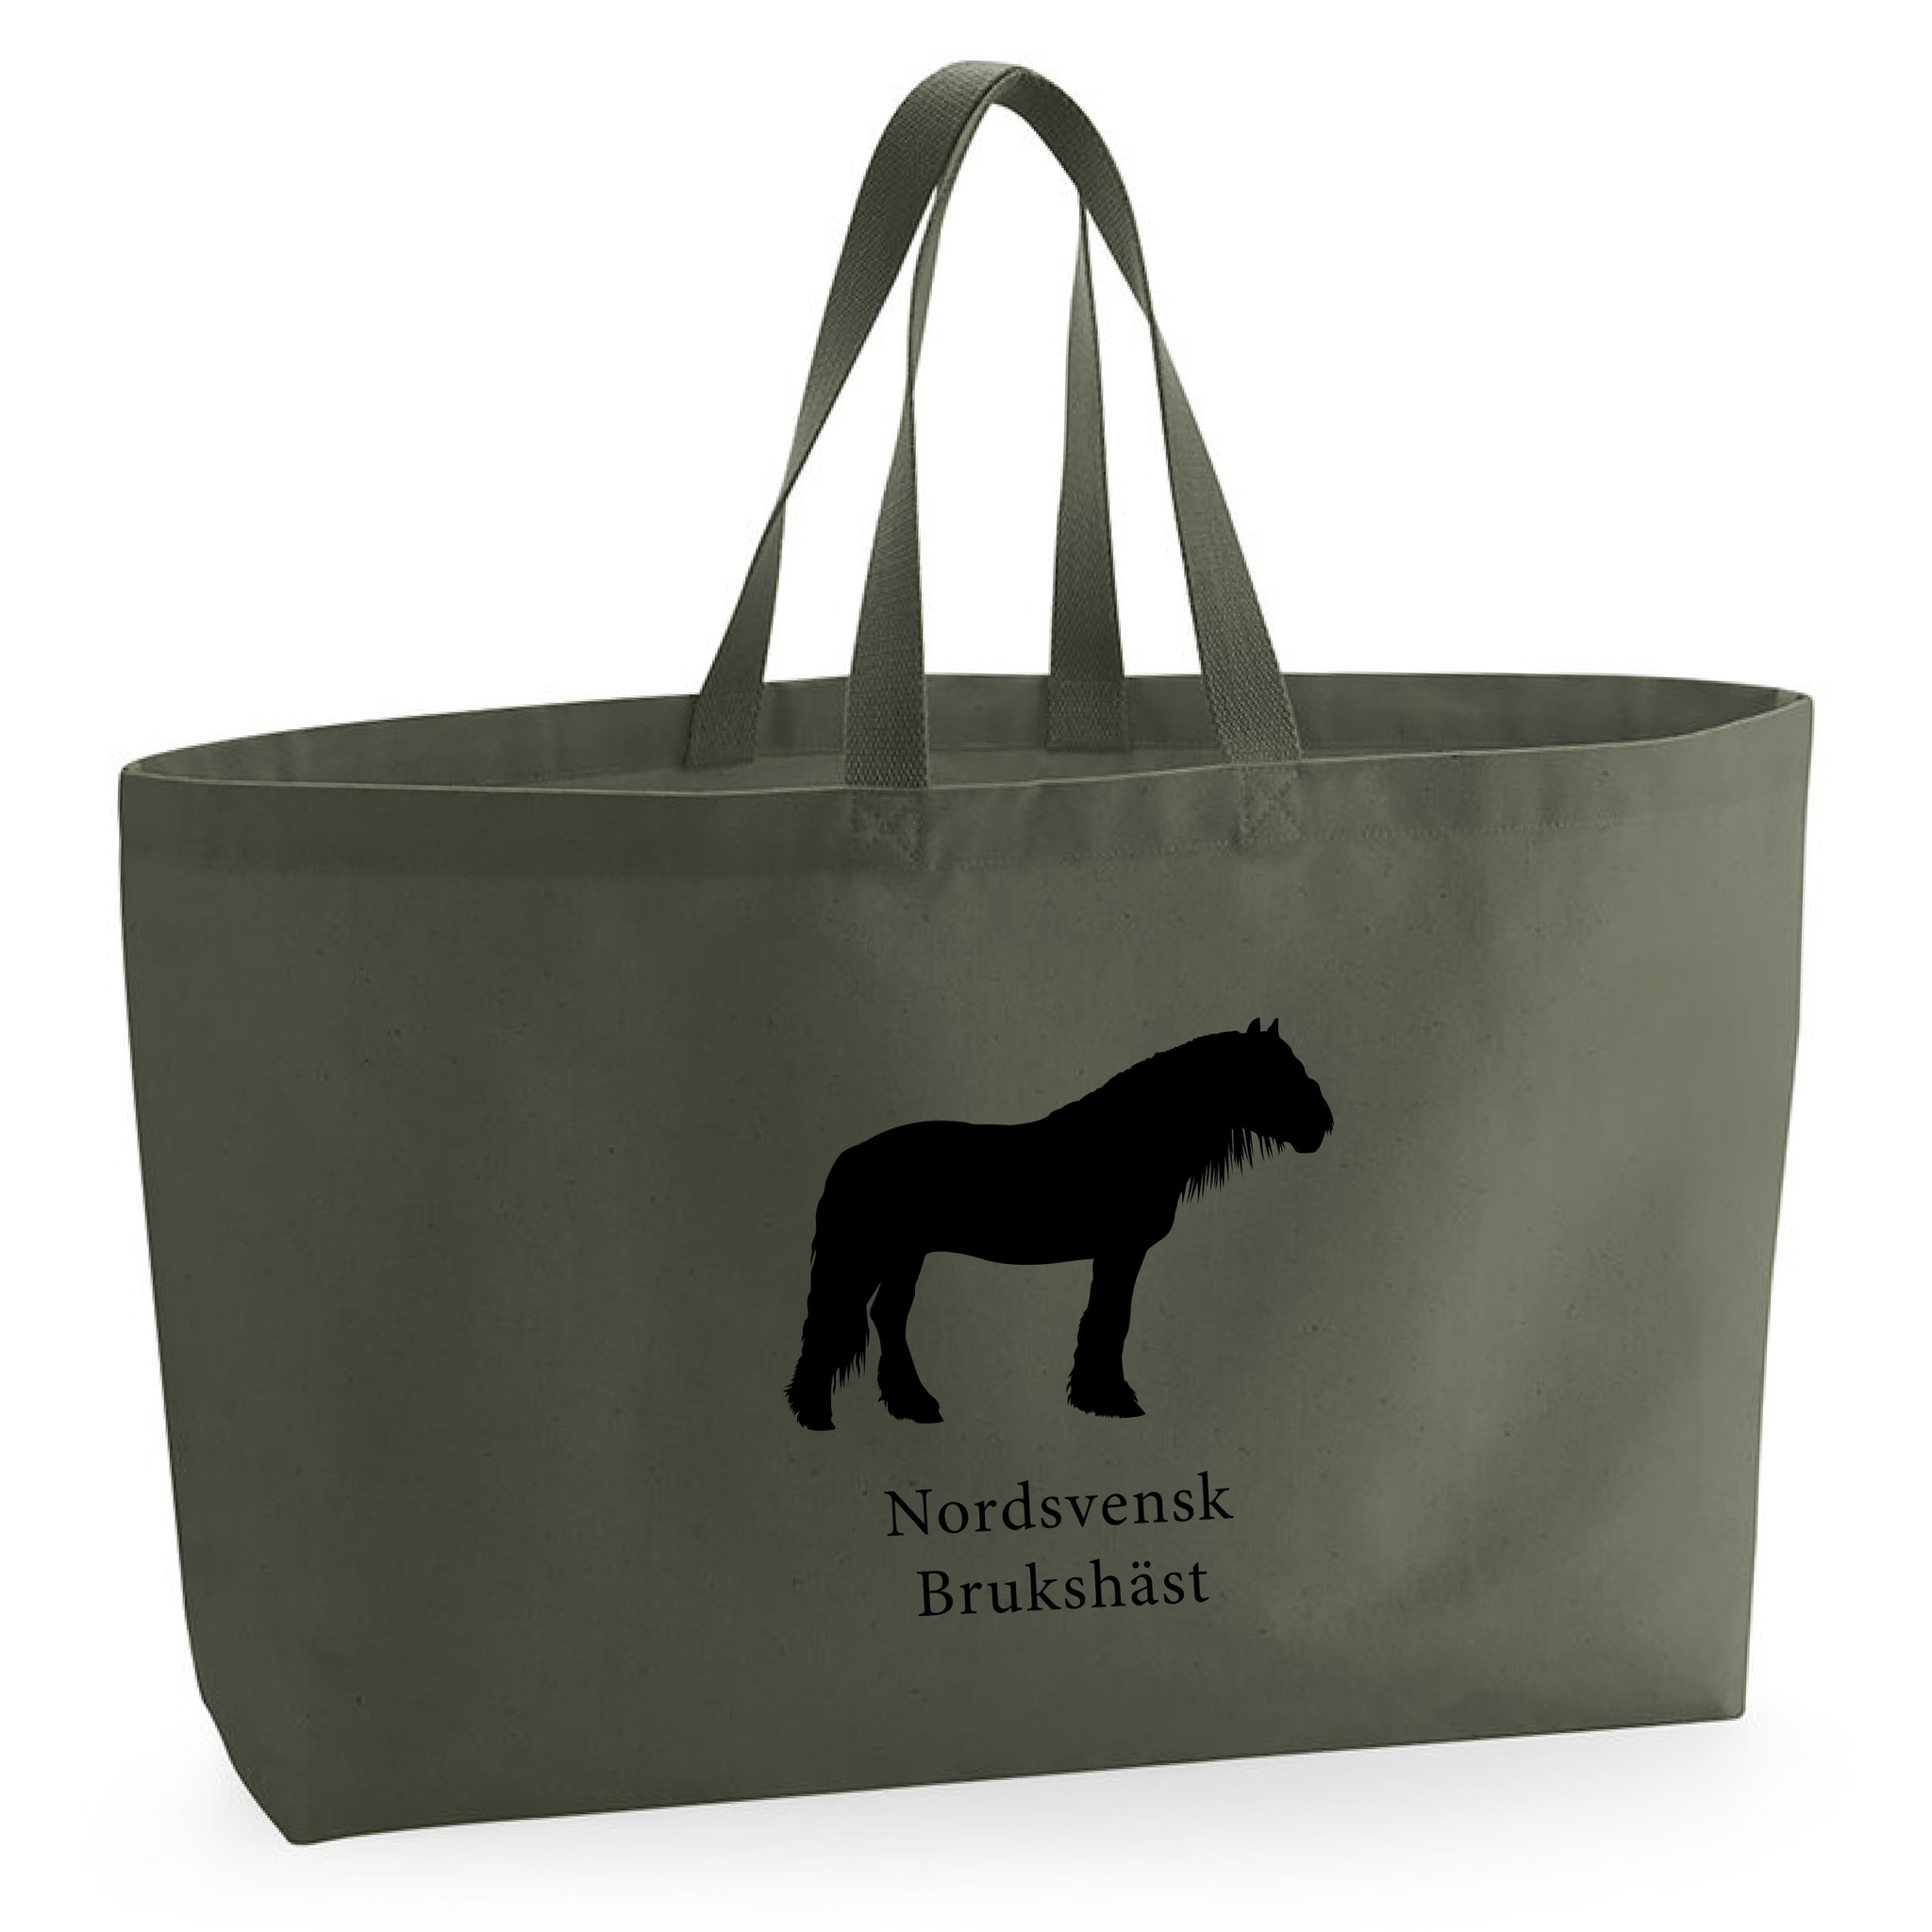 Tygkasse Nordsvenskt Brukshäst - Oversized bag